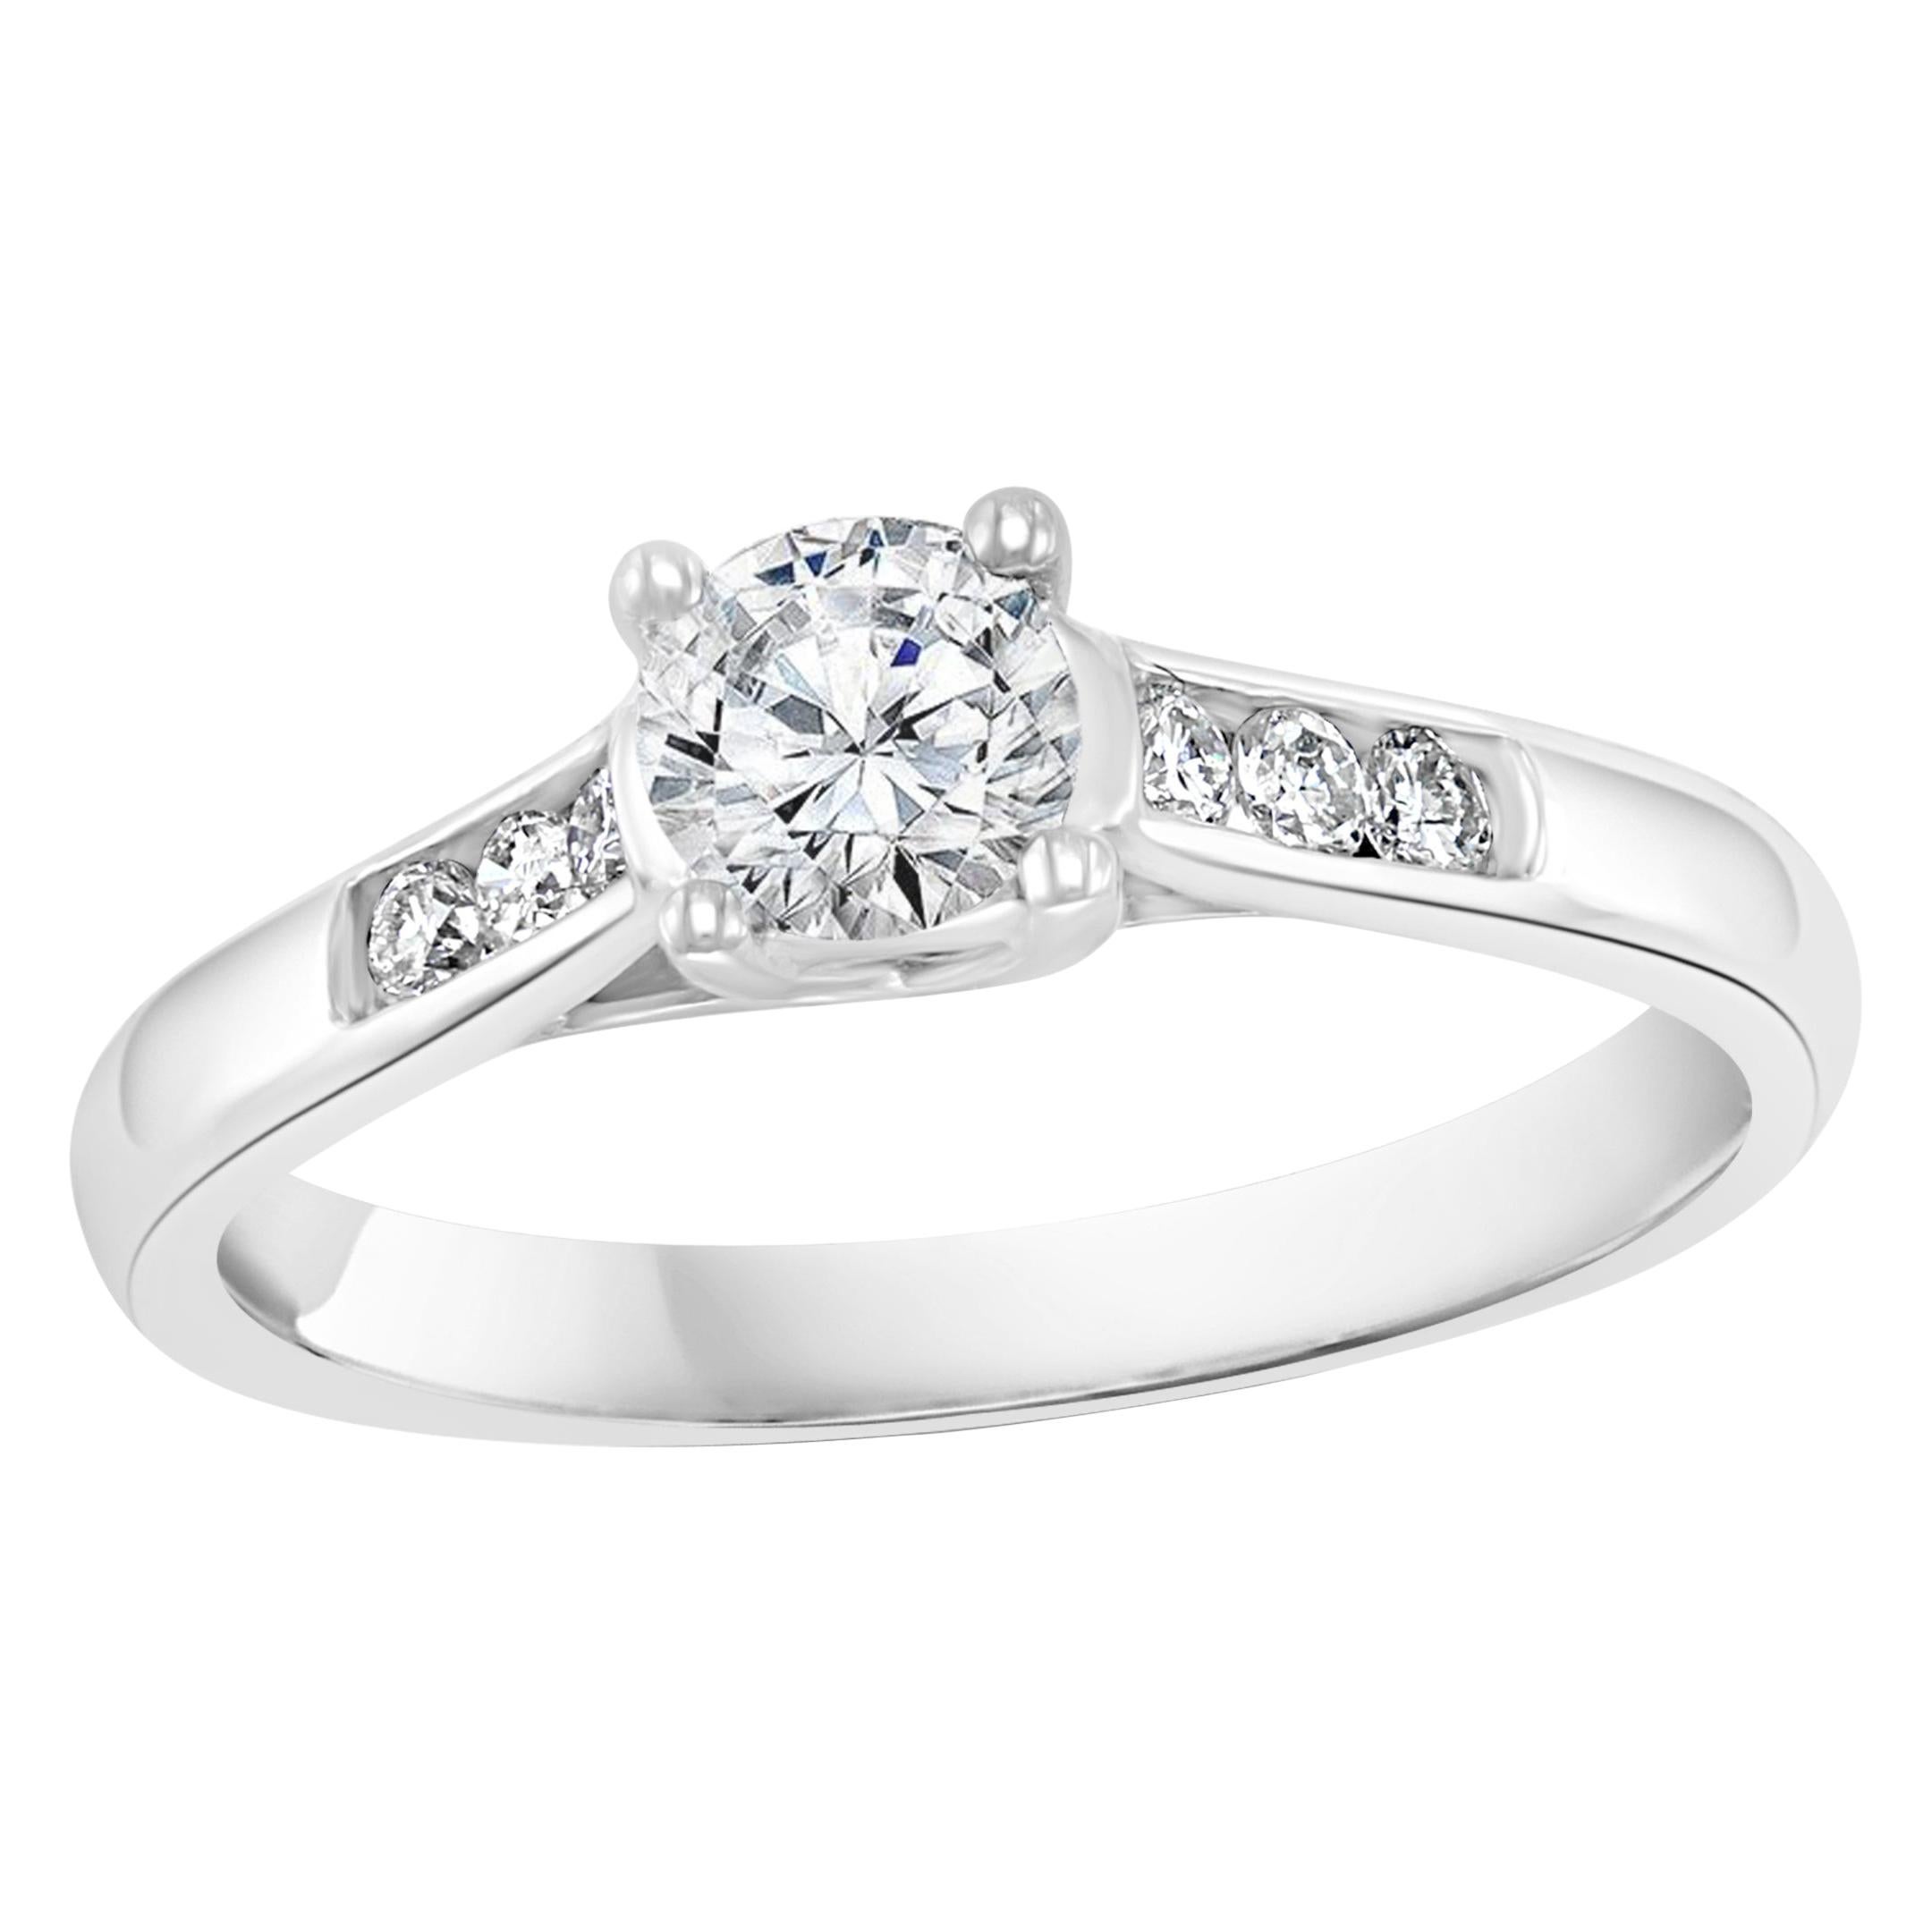 1 Carat Diamond Traditional Engagement Ring 14 Karat White Gold For ...